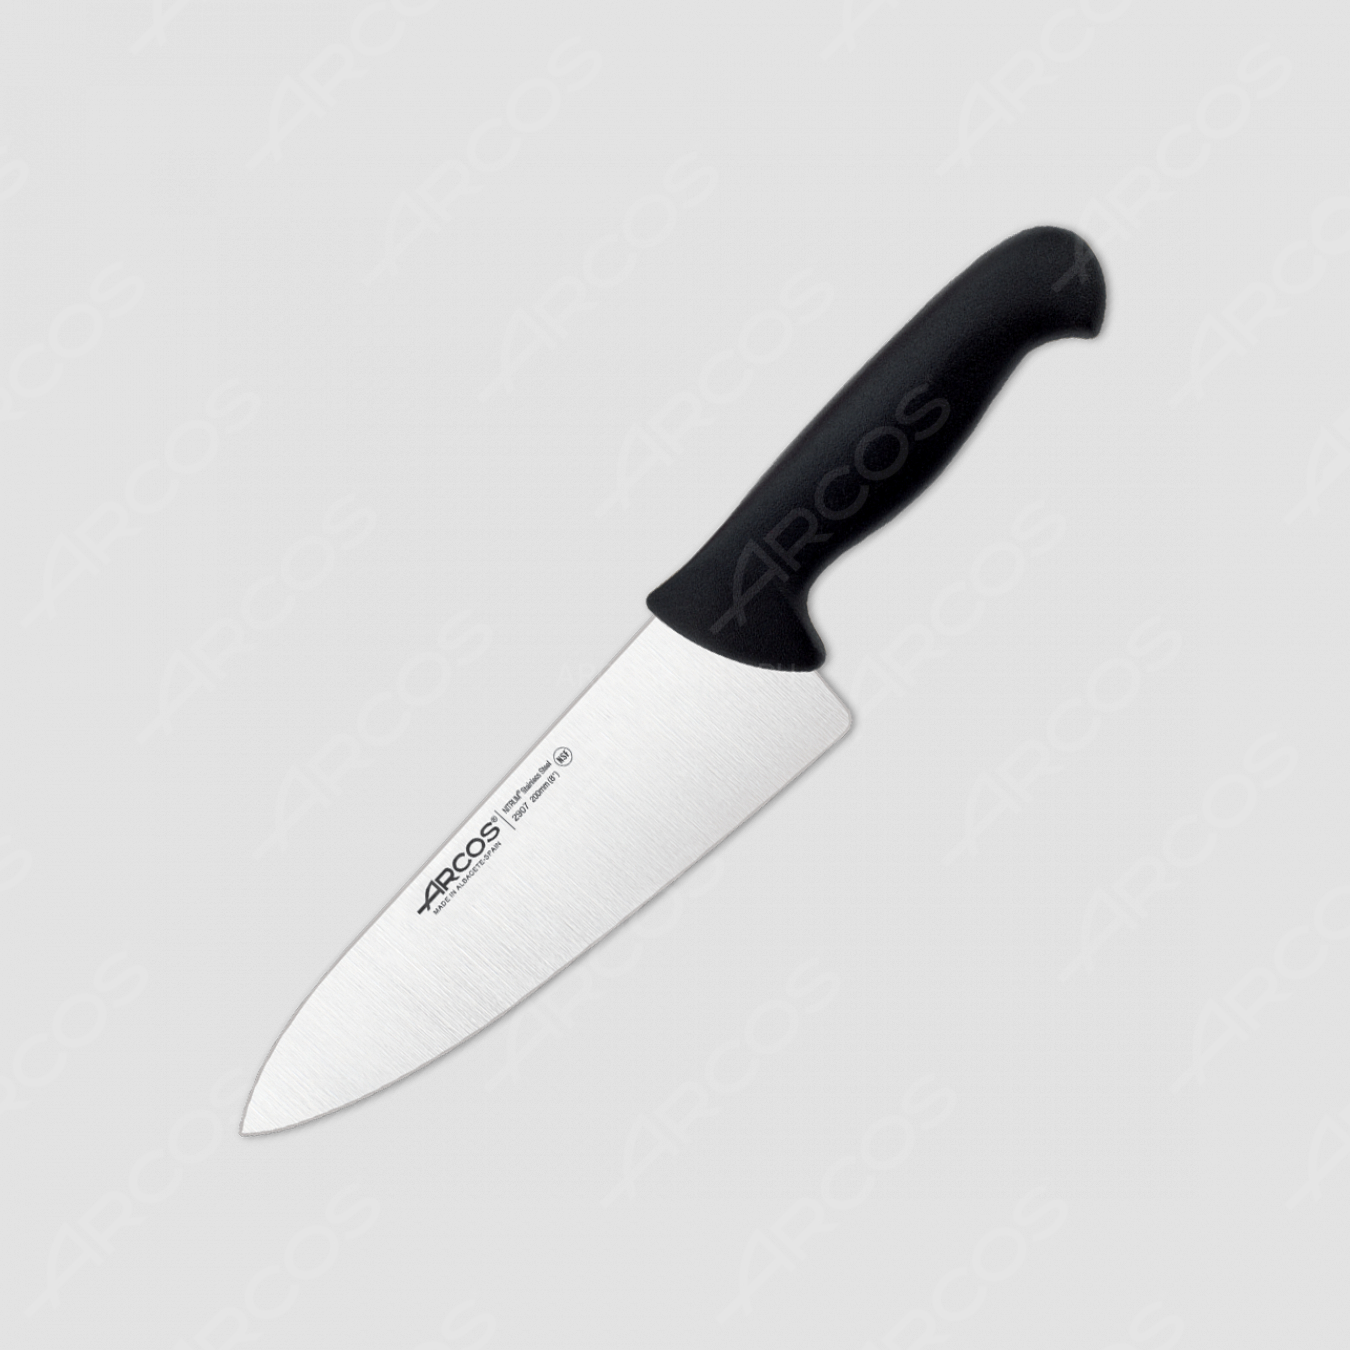 Нож кухонный поварской 20 см, цвет рукояти черный, серия 2900, ARCOS, Испания